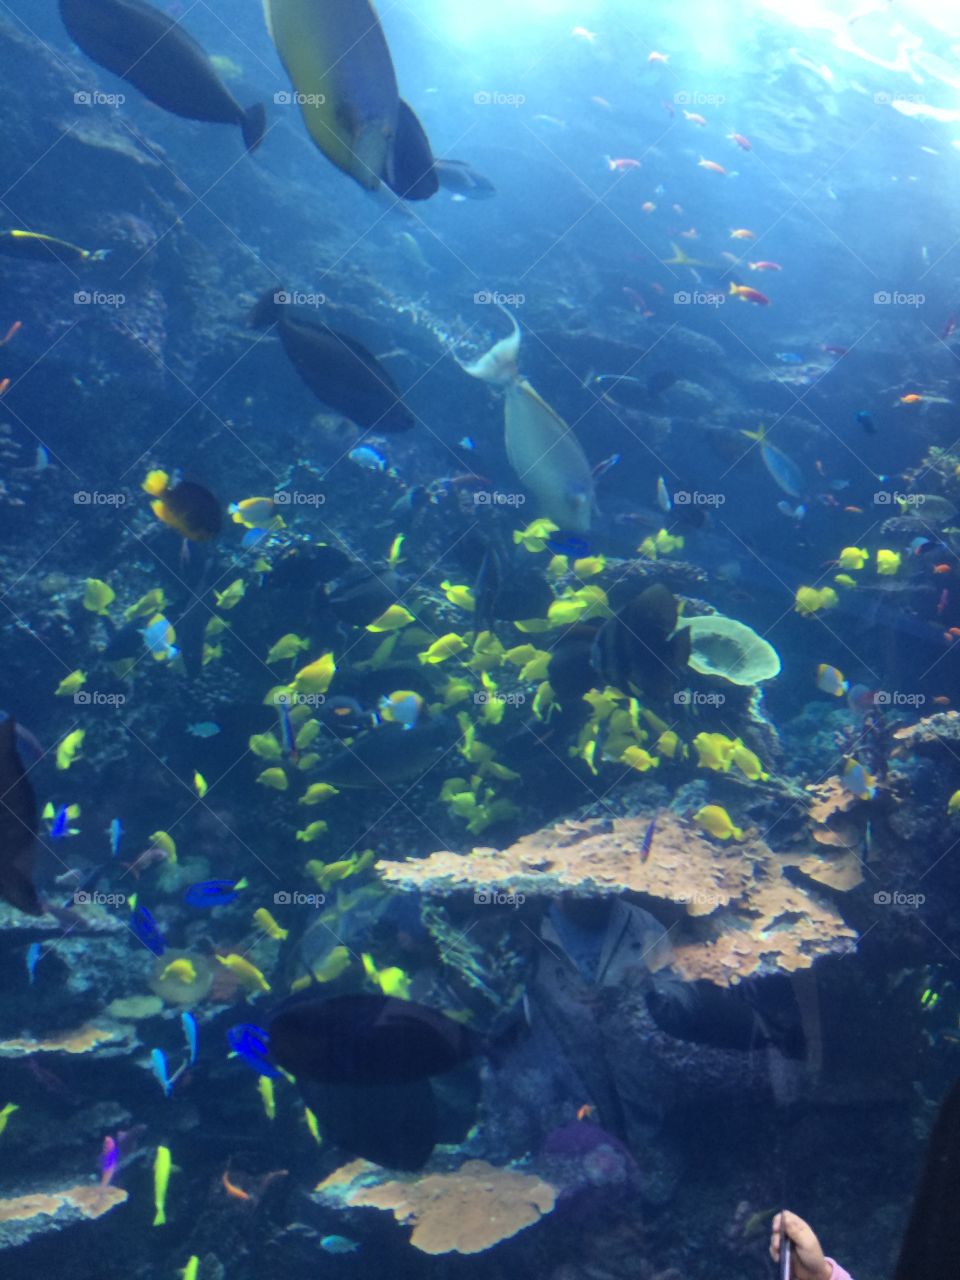 School of Fish in Aquarium 